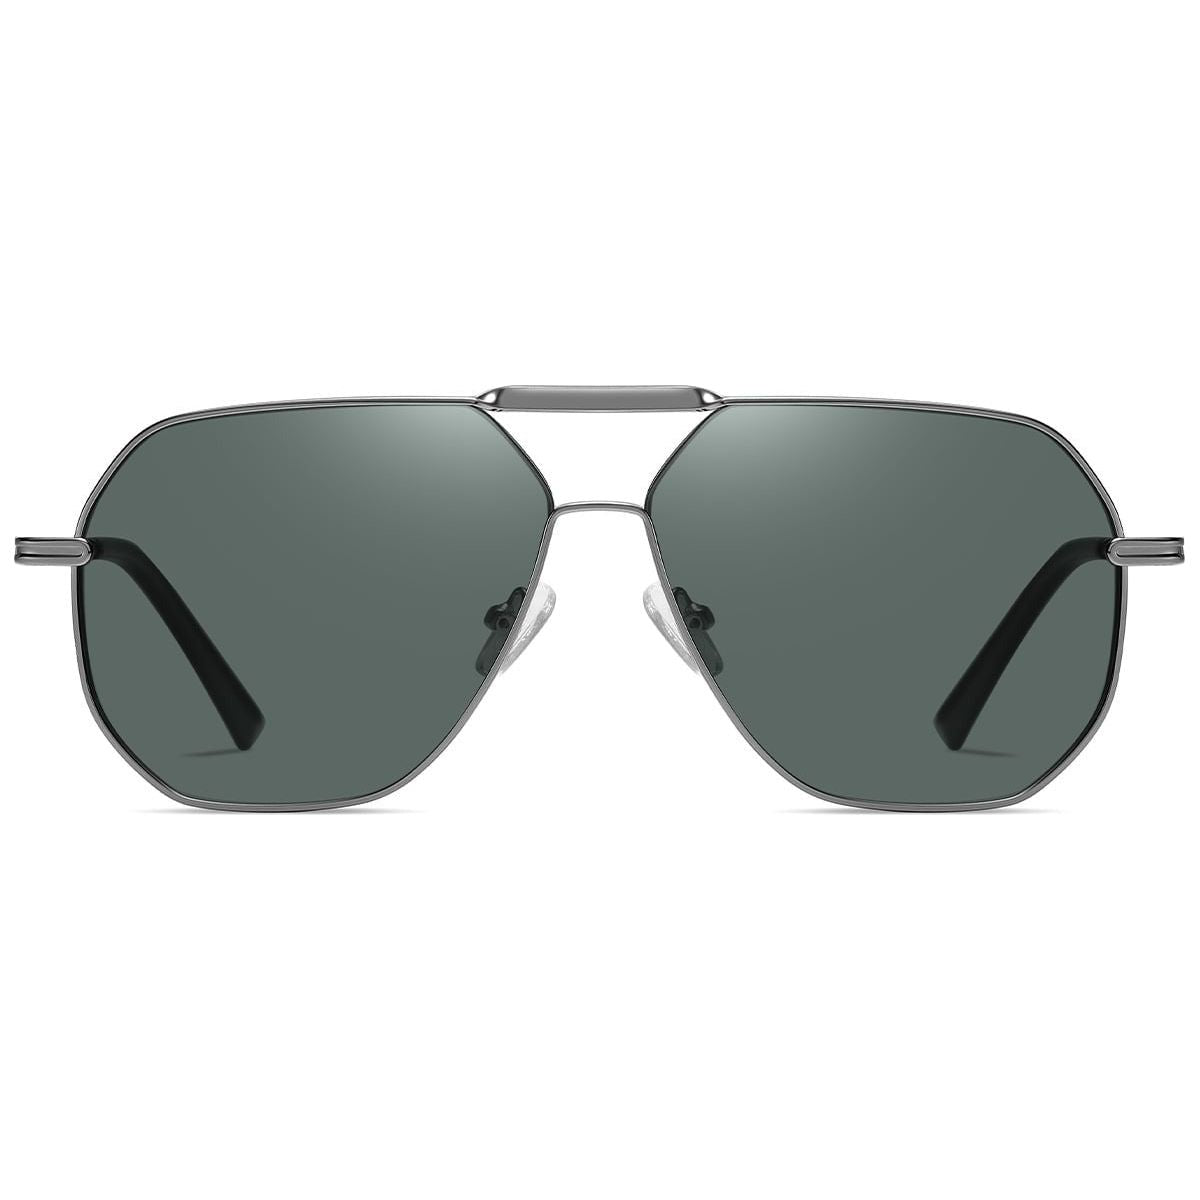 Candye Aviator Sunglasses SG5503 